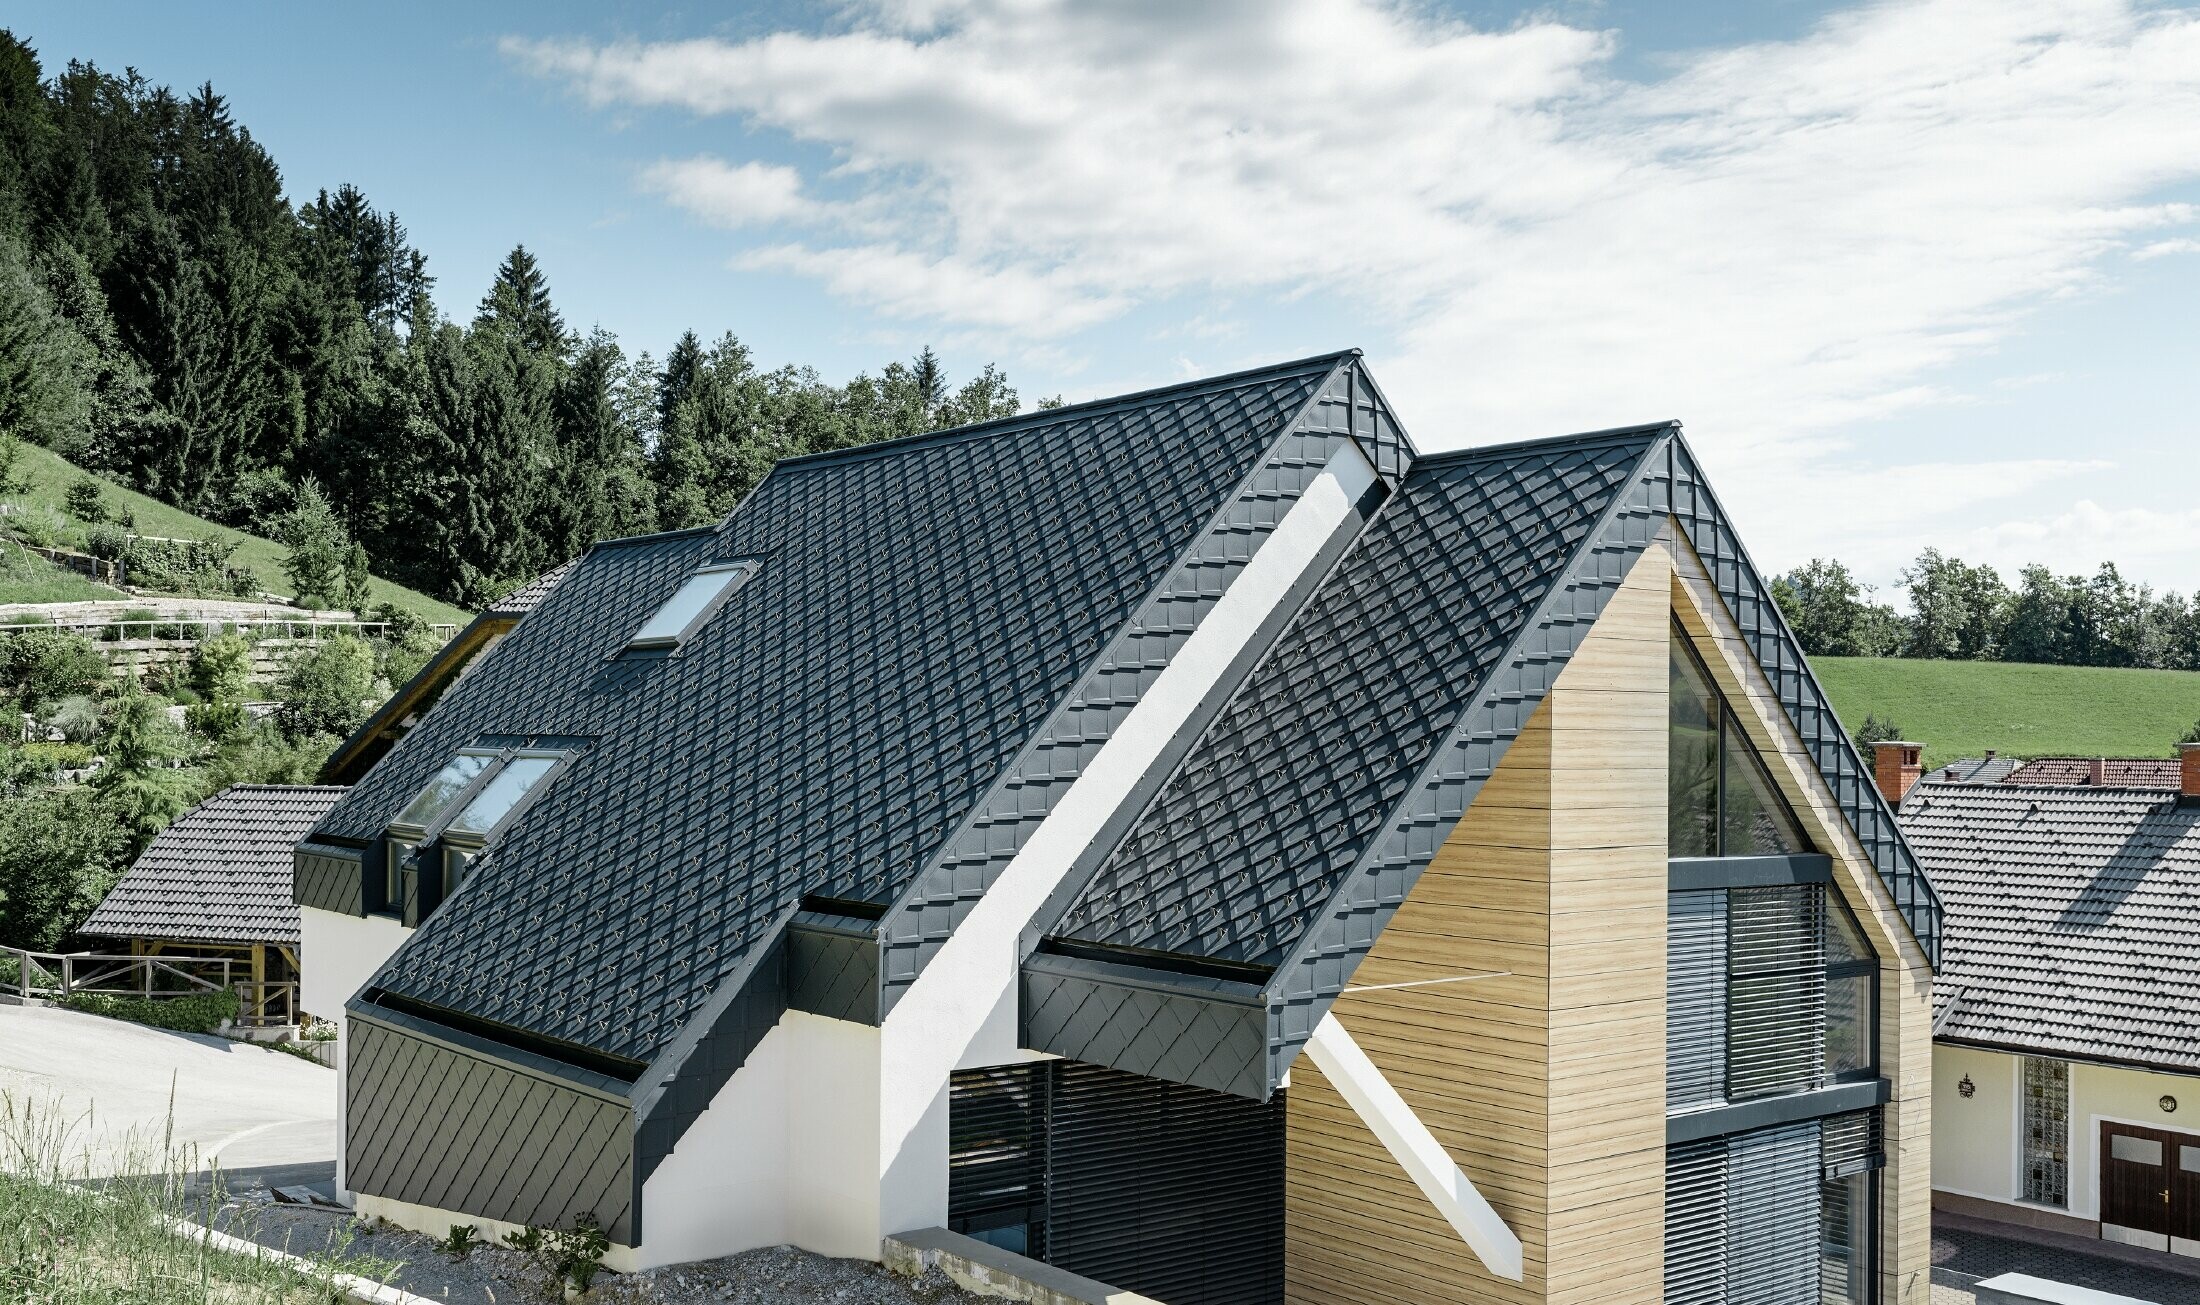 Maison individuelle avec toit à deux versants sans saillie, avec façade imitation bois et toit en aluminium couleur anthracite